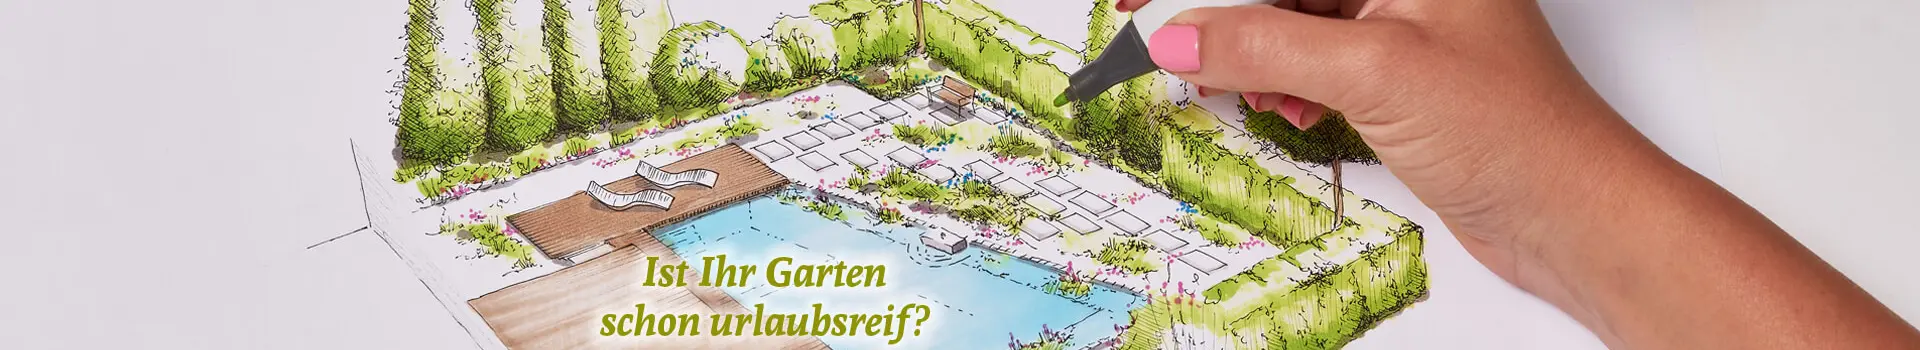 Ein Gartengestalter färbt einen gezeichneten Gartenplan auf Papier ein.